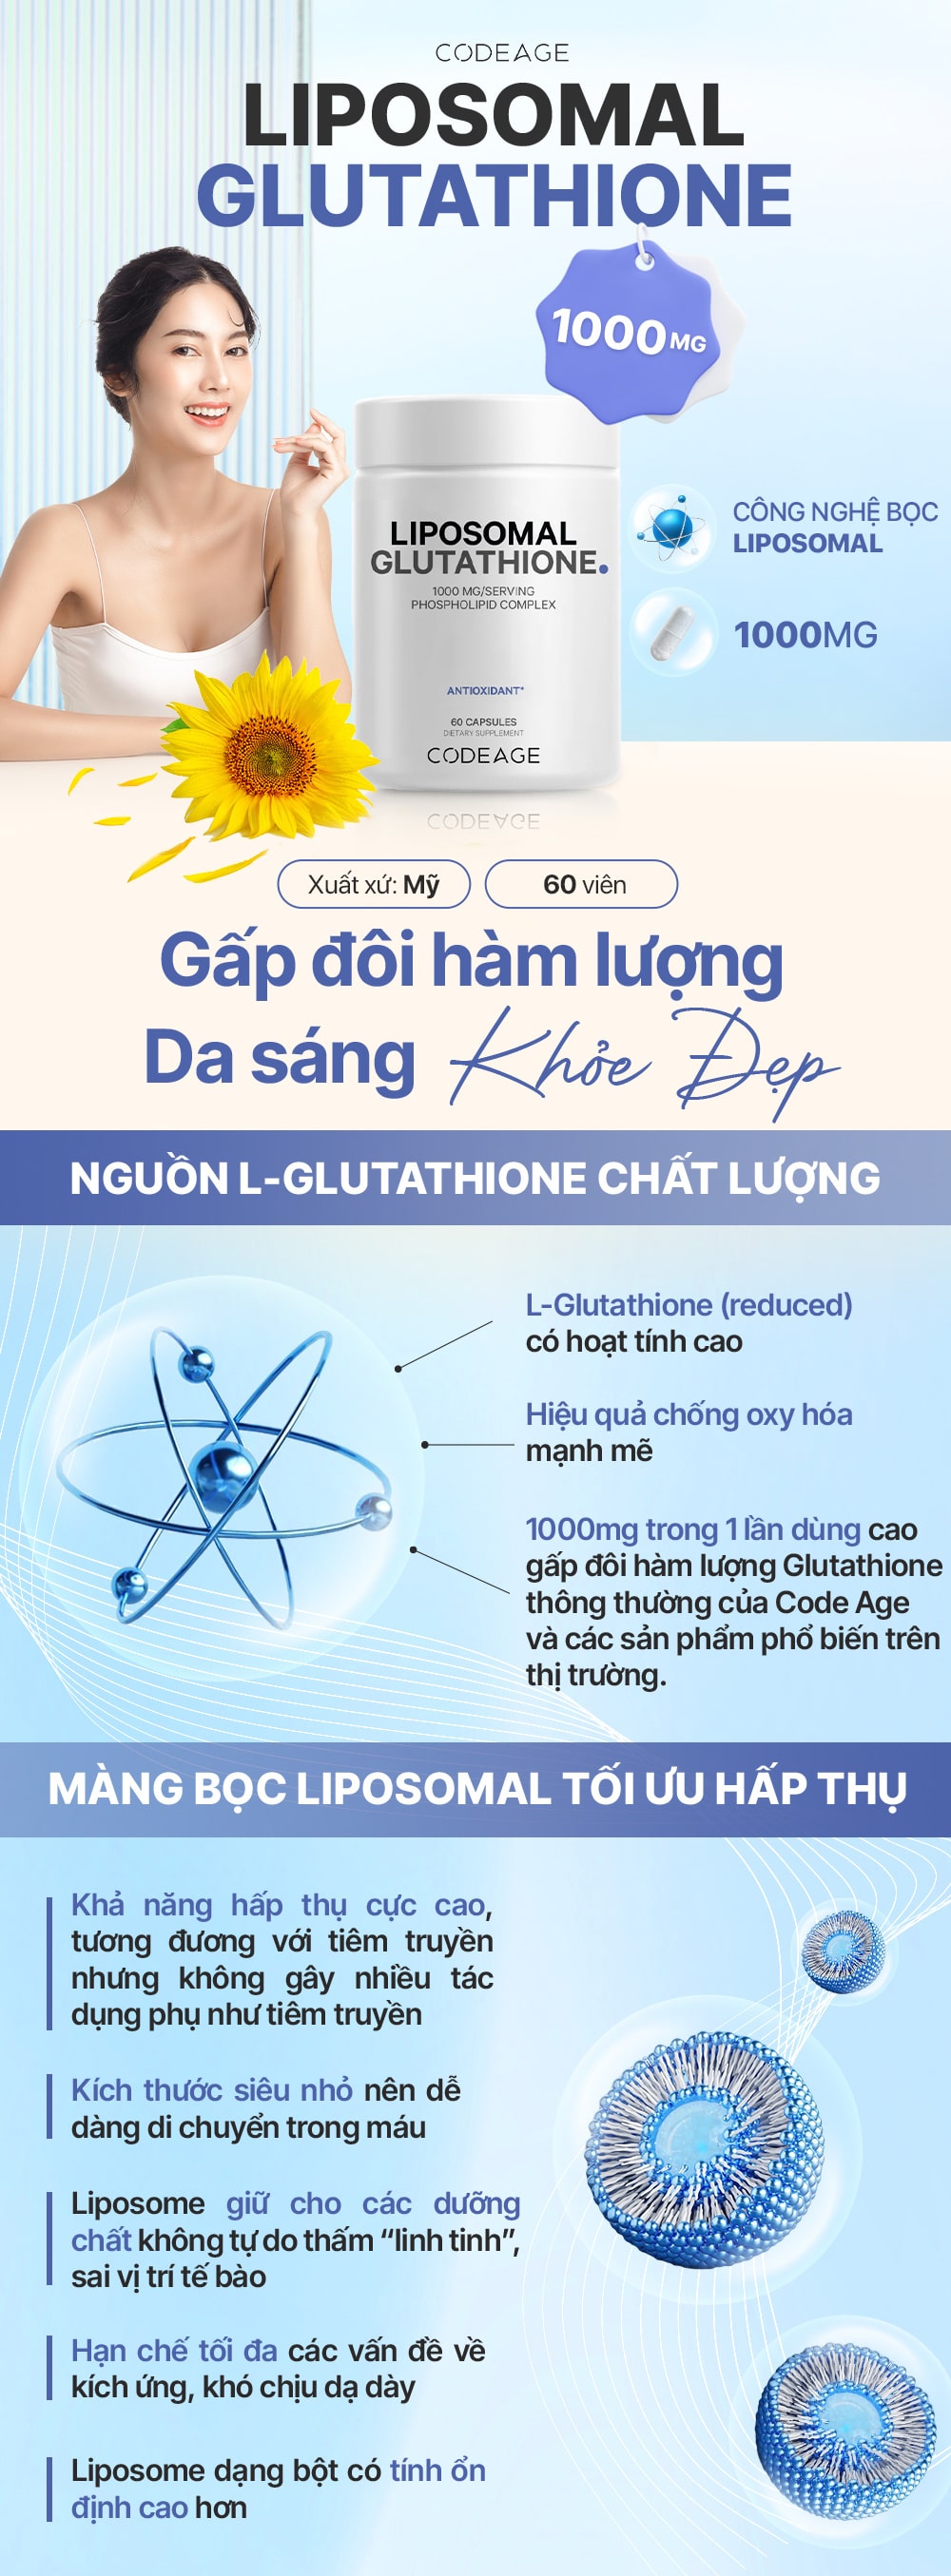 1000mg-liposomal-glutathione-gymstore-1